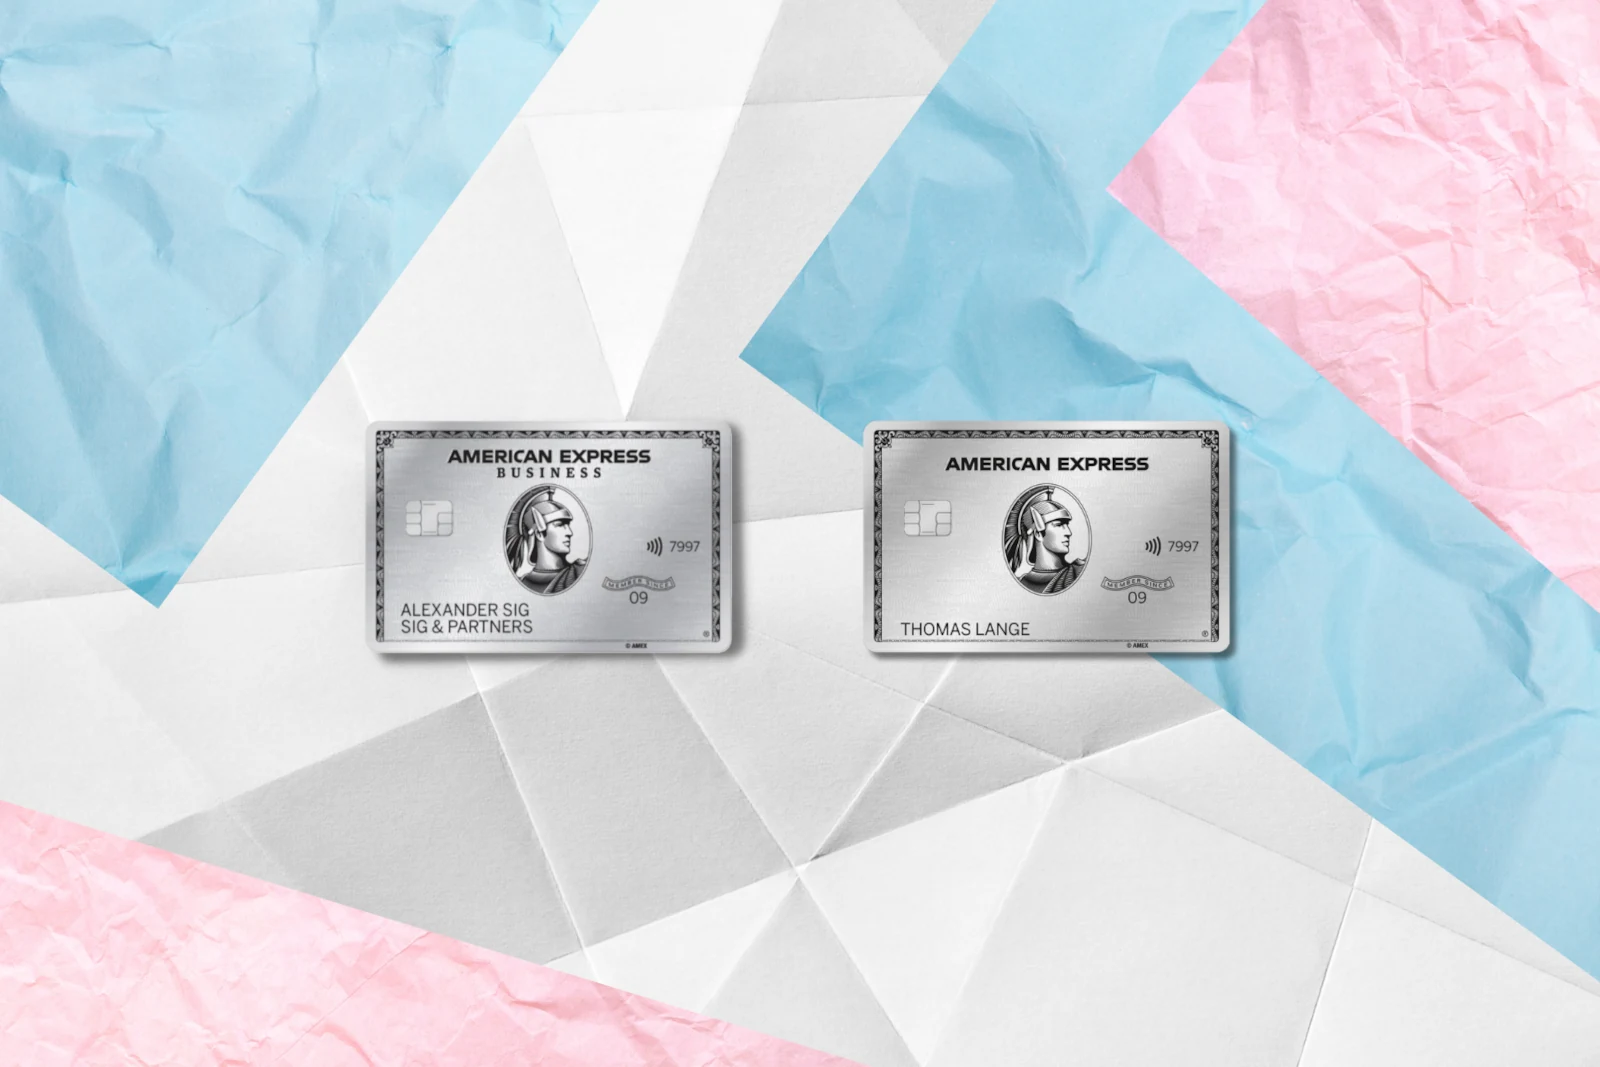 Gründe für die Amex Business Platinum Card anstelle der privaten Amex Platinum Card